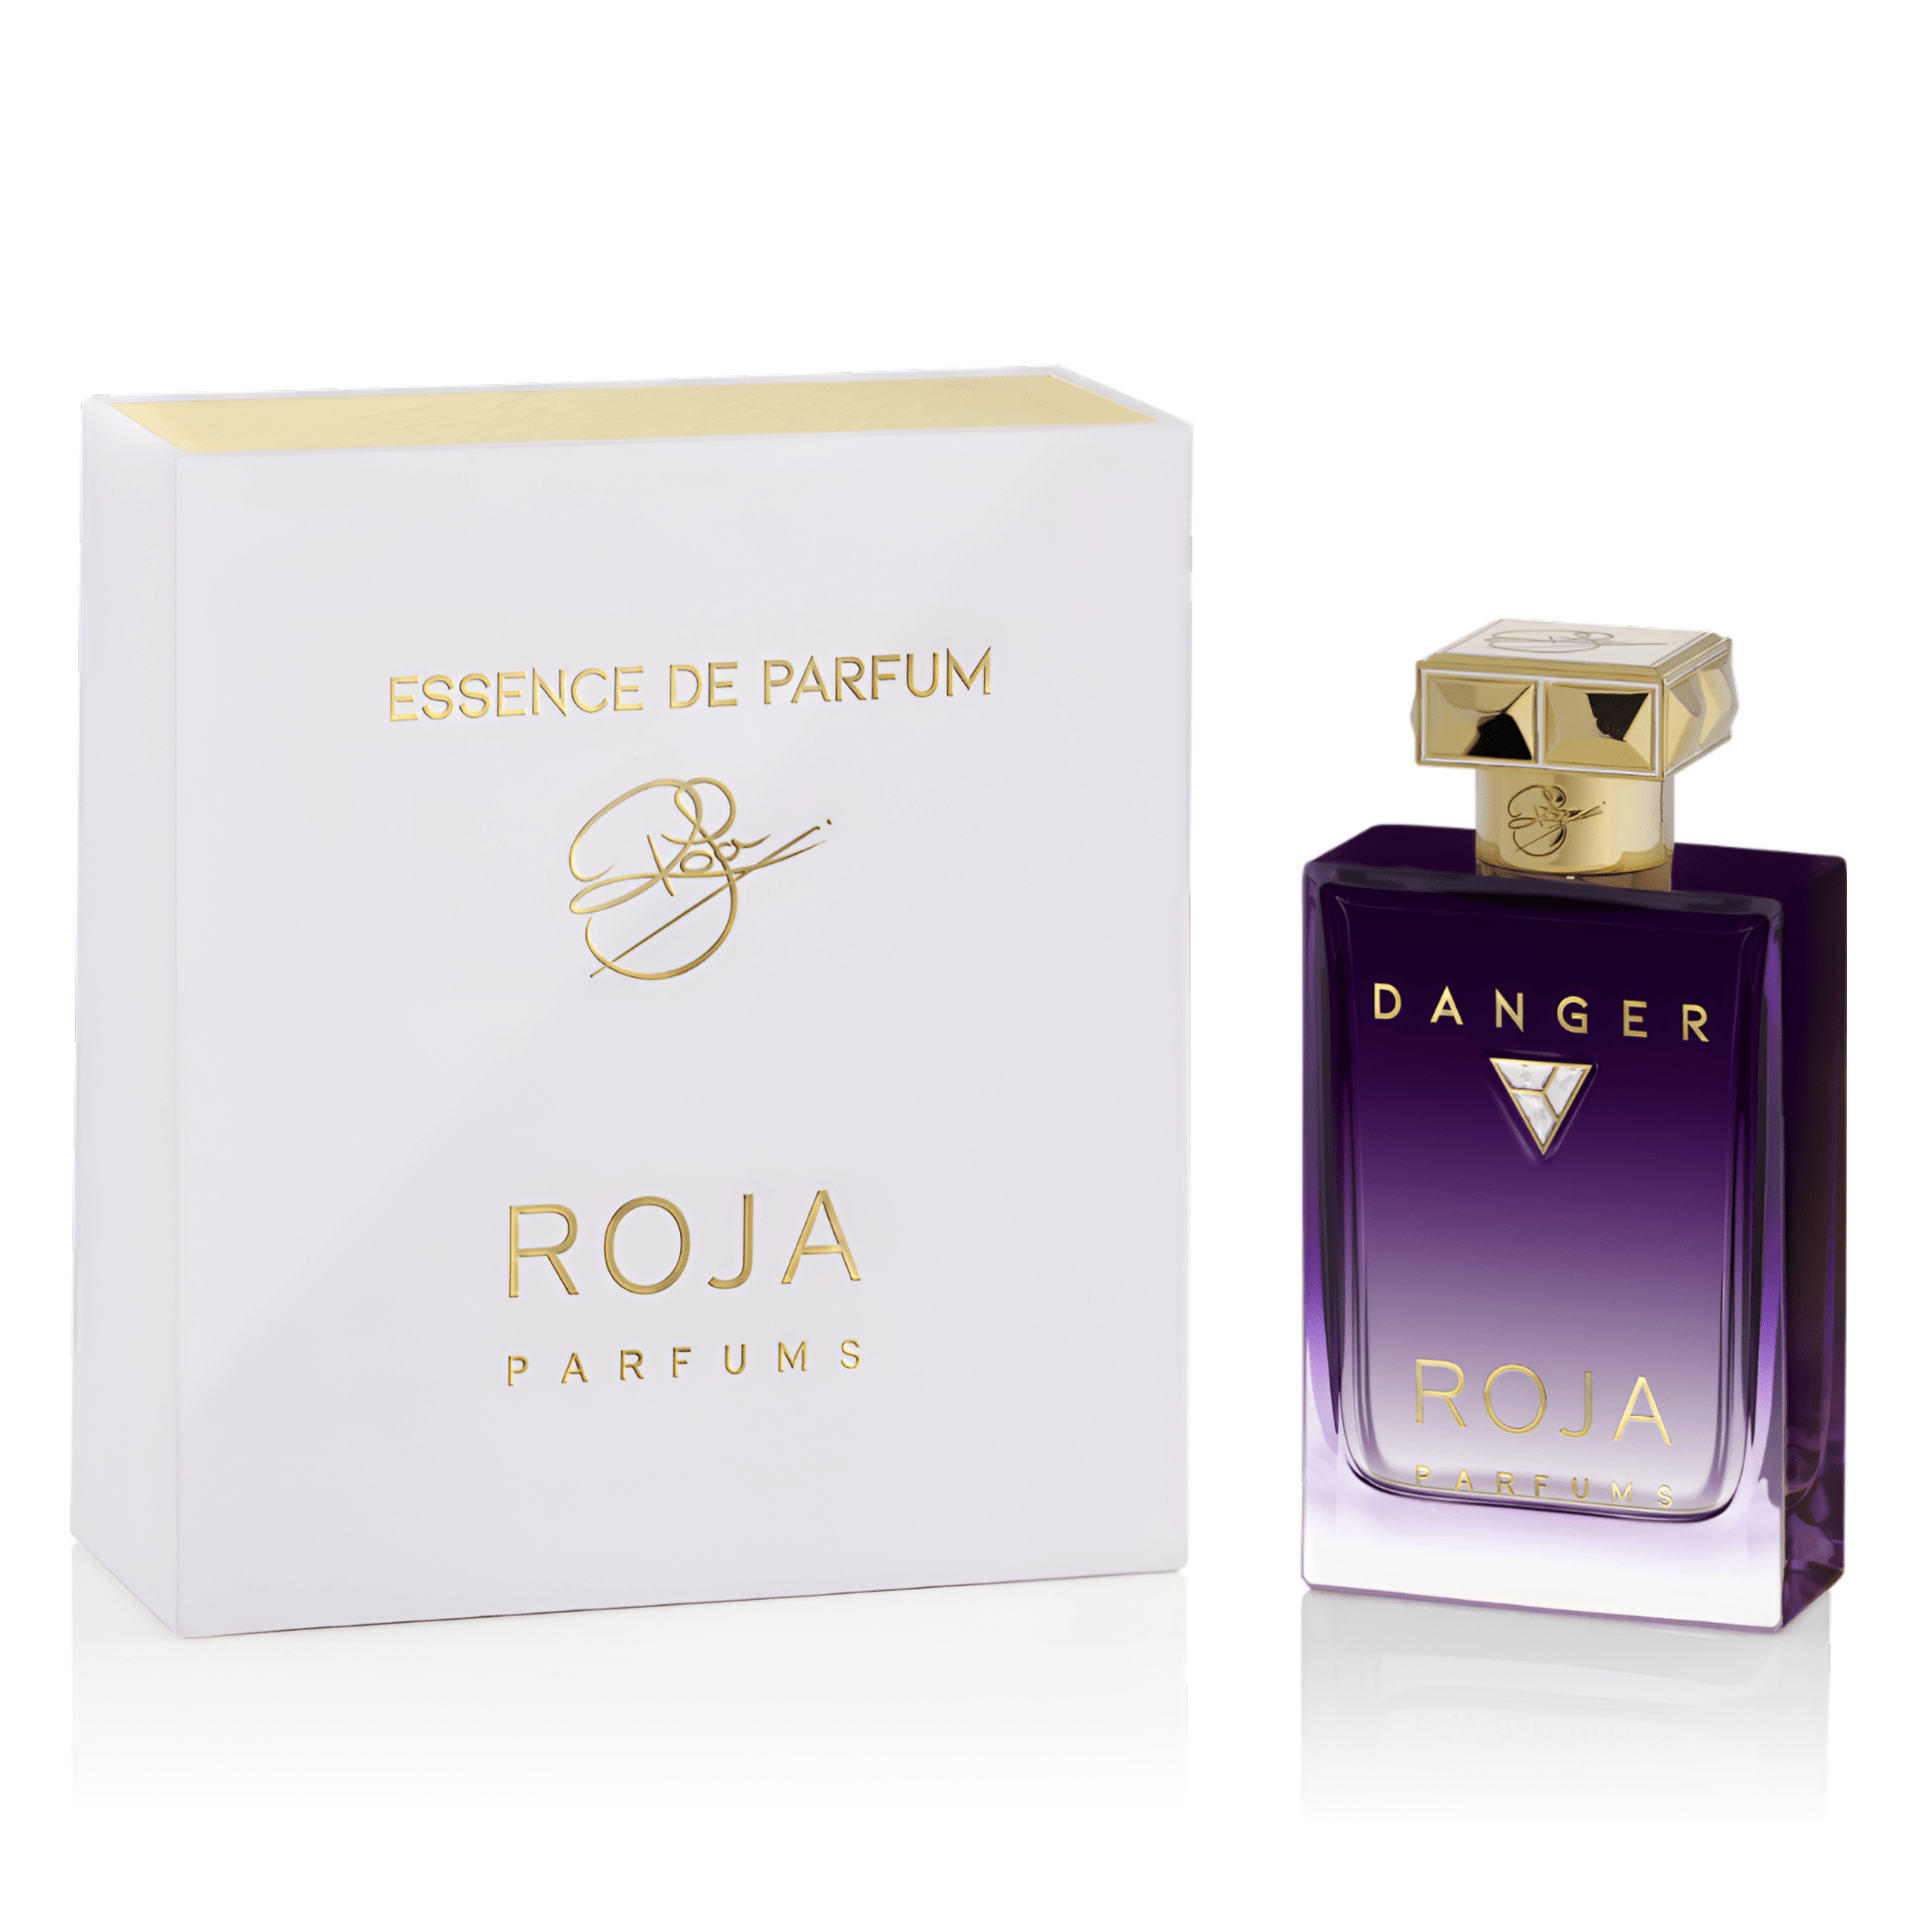 Roja Parfums Danger Pour Femme Essence De Parfum | My Perfume Shop Australia